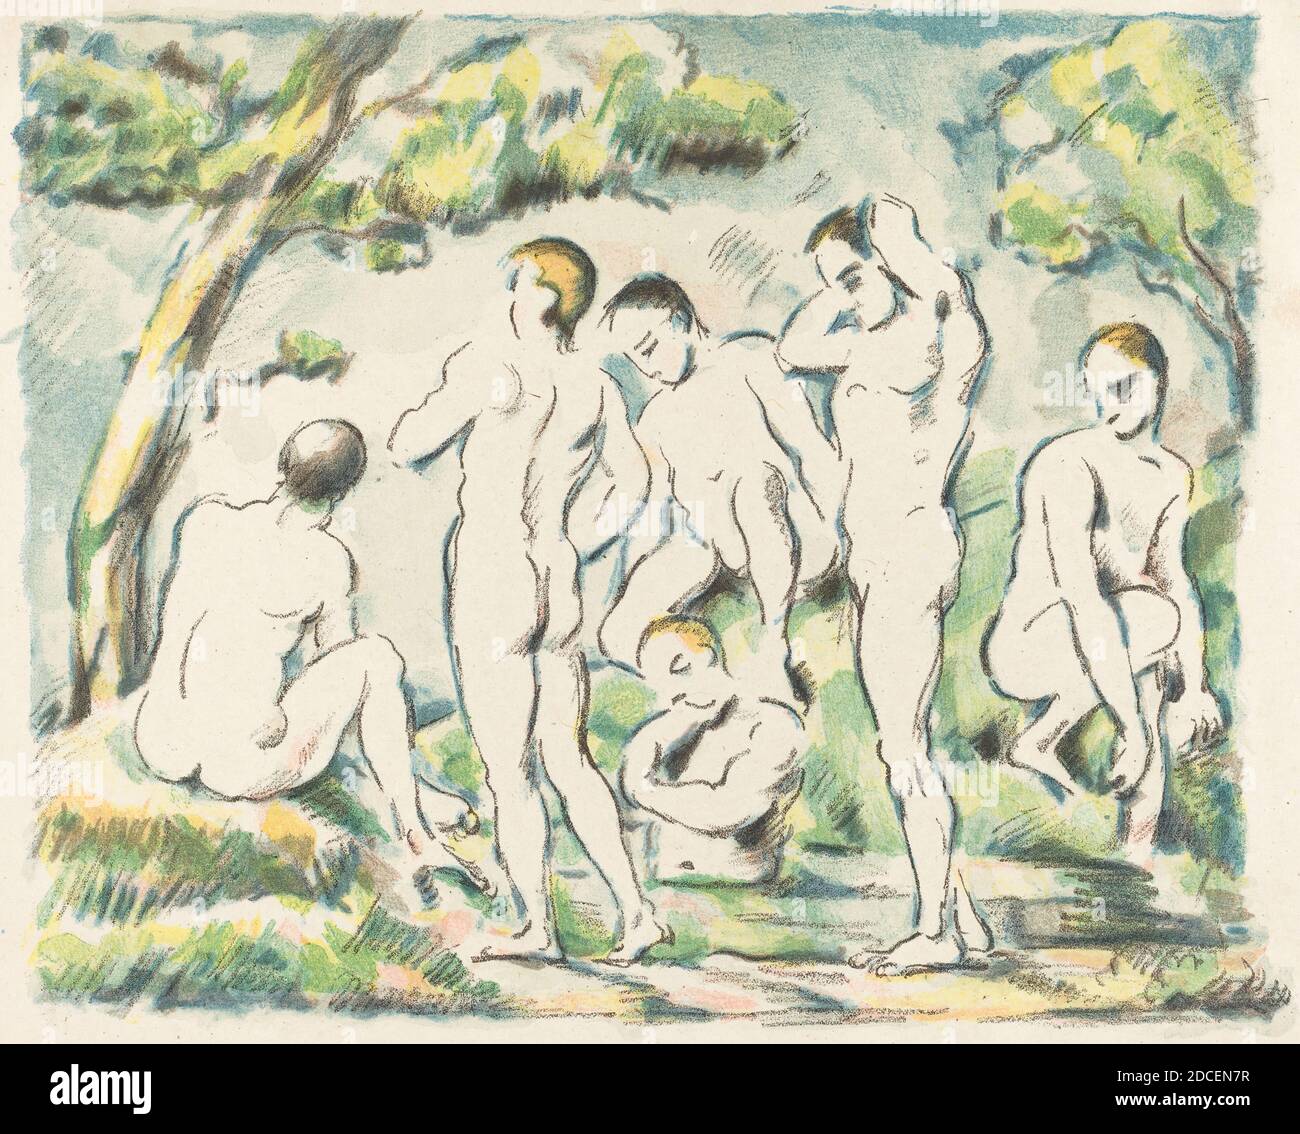 Paul Cézanne, (artiste), Français, 1839 - 1906, les baigneurs (petite assiette), l'Album d'etampes originales de la Galerie Volard, (série), 1897, lithographie couleur sur papier de chine, total: 23.6 x 29.1 cm (9 5/16 x 11 7/16 po Banque D'Images